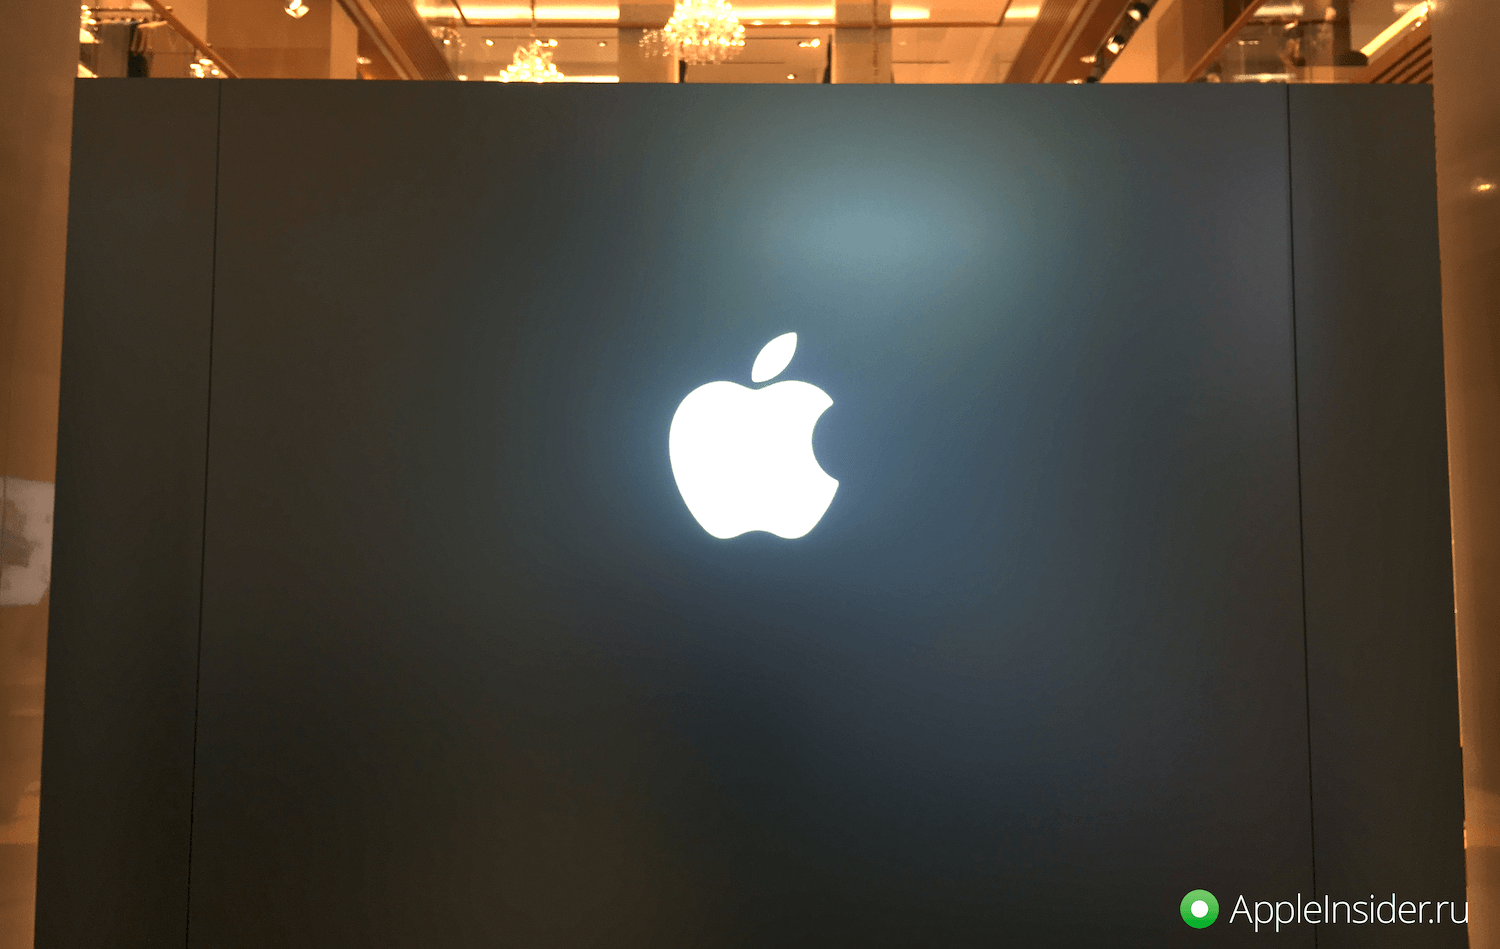 Фотоотчет о визите в обновленный Apple Shop в ЦУМе